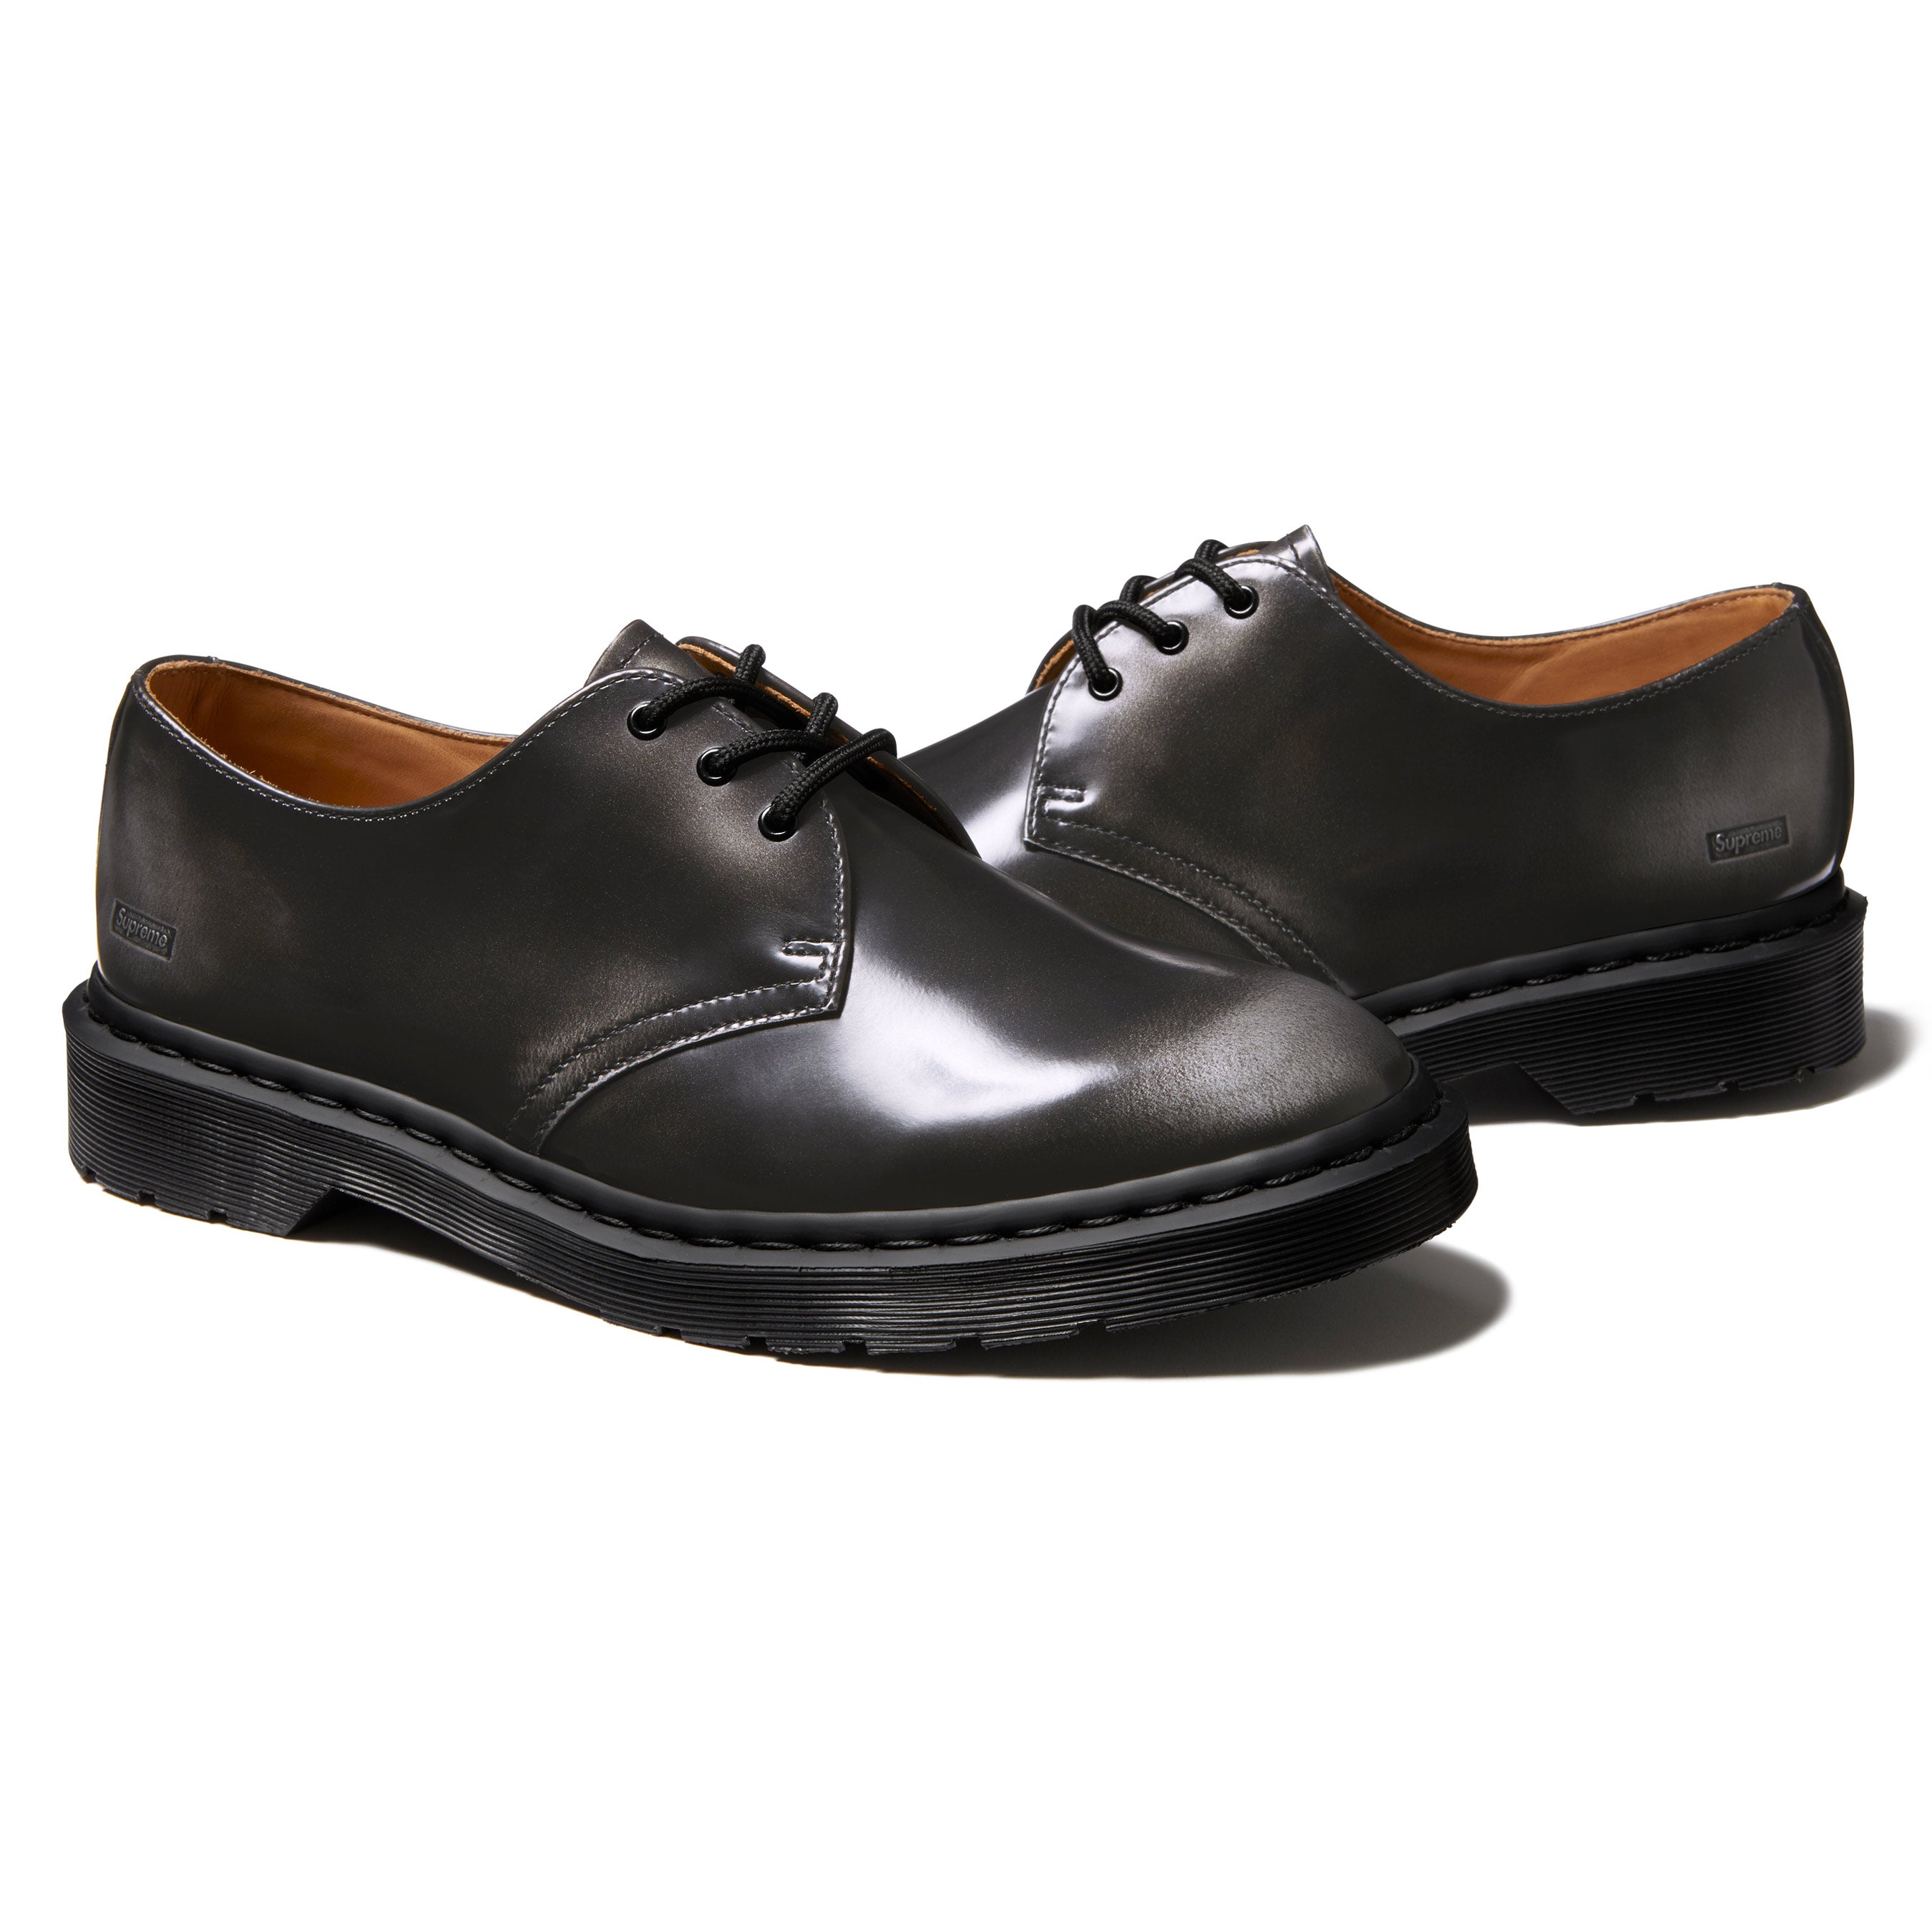 UK8US927cm27cm Supreme Dr. Martens 1461 3-Eye Shoe